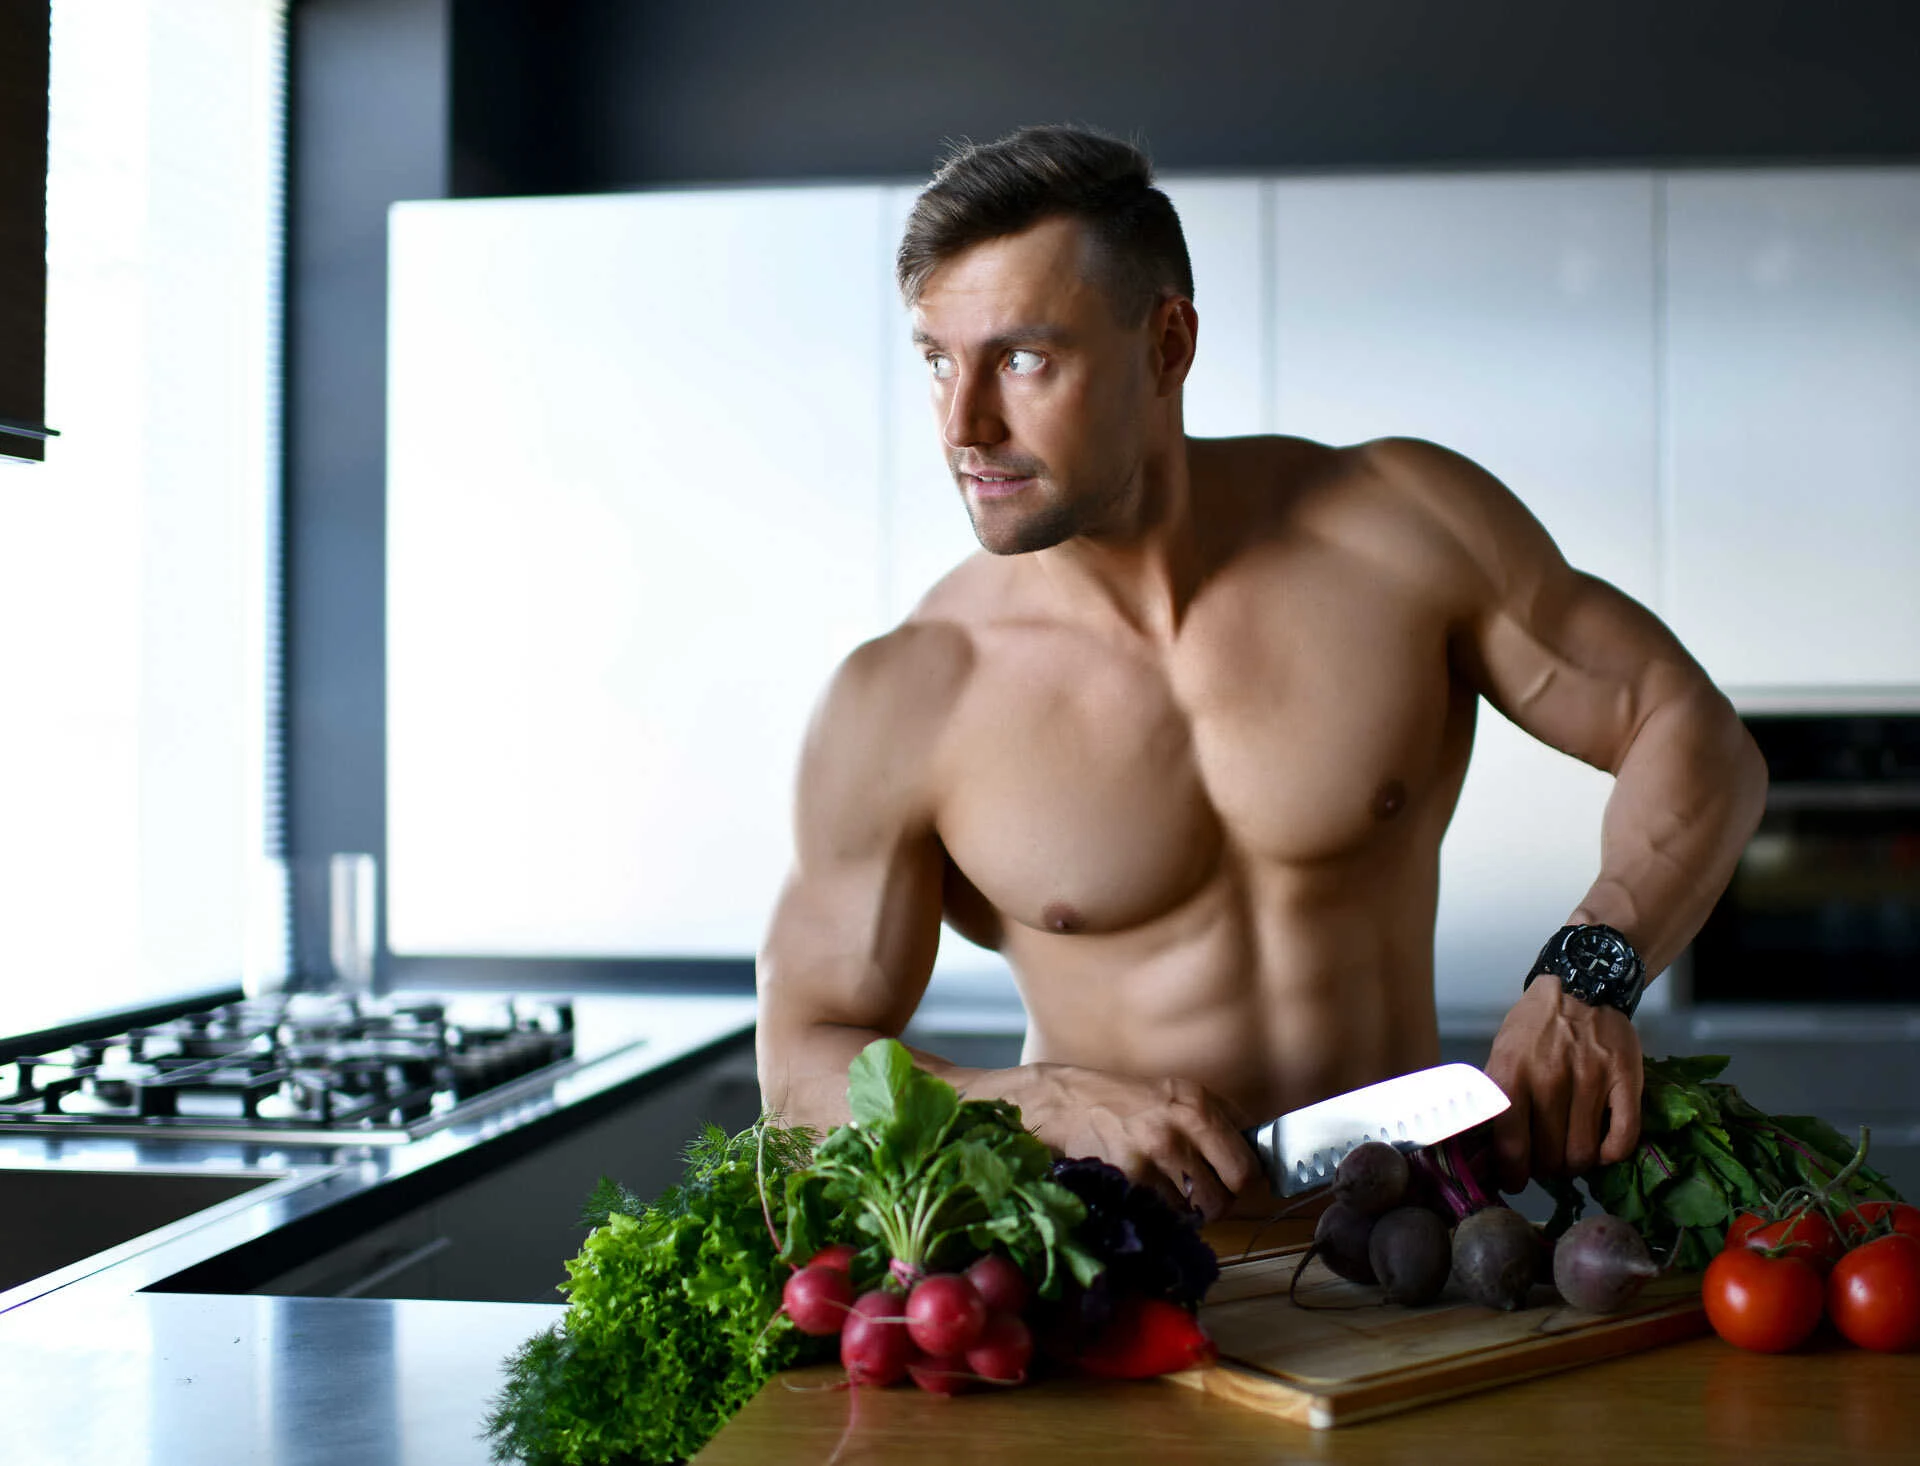 Vegetarianism in bodybuilding